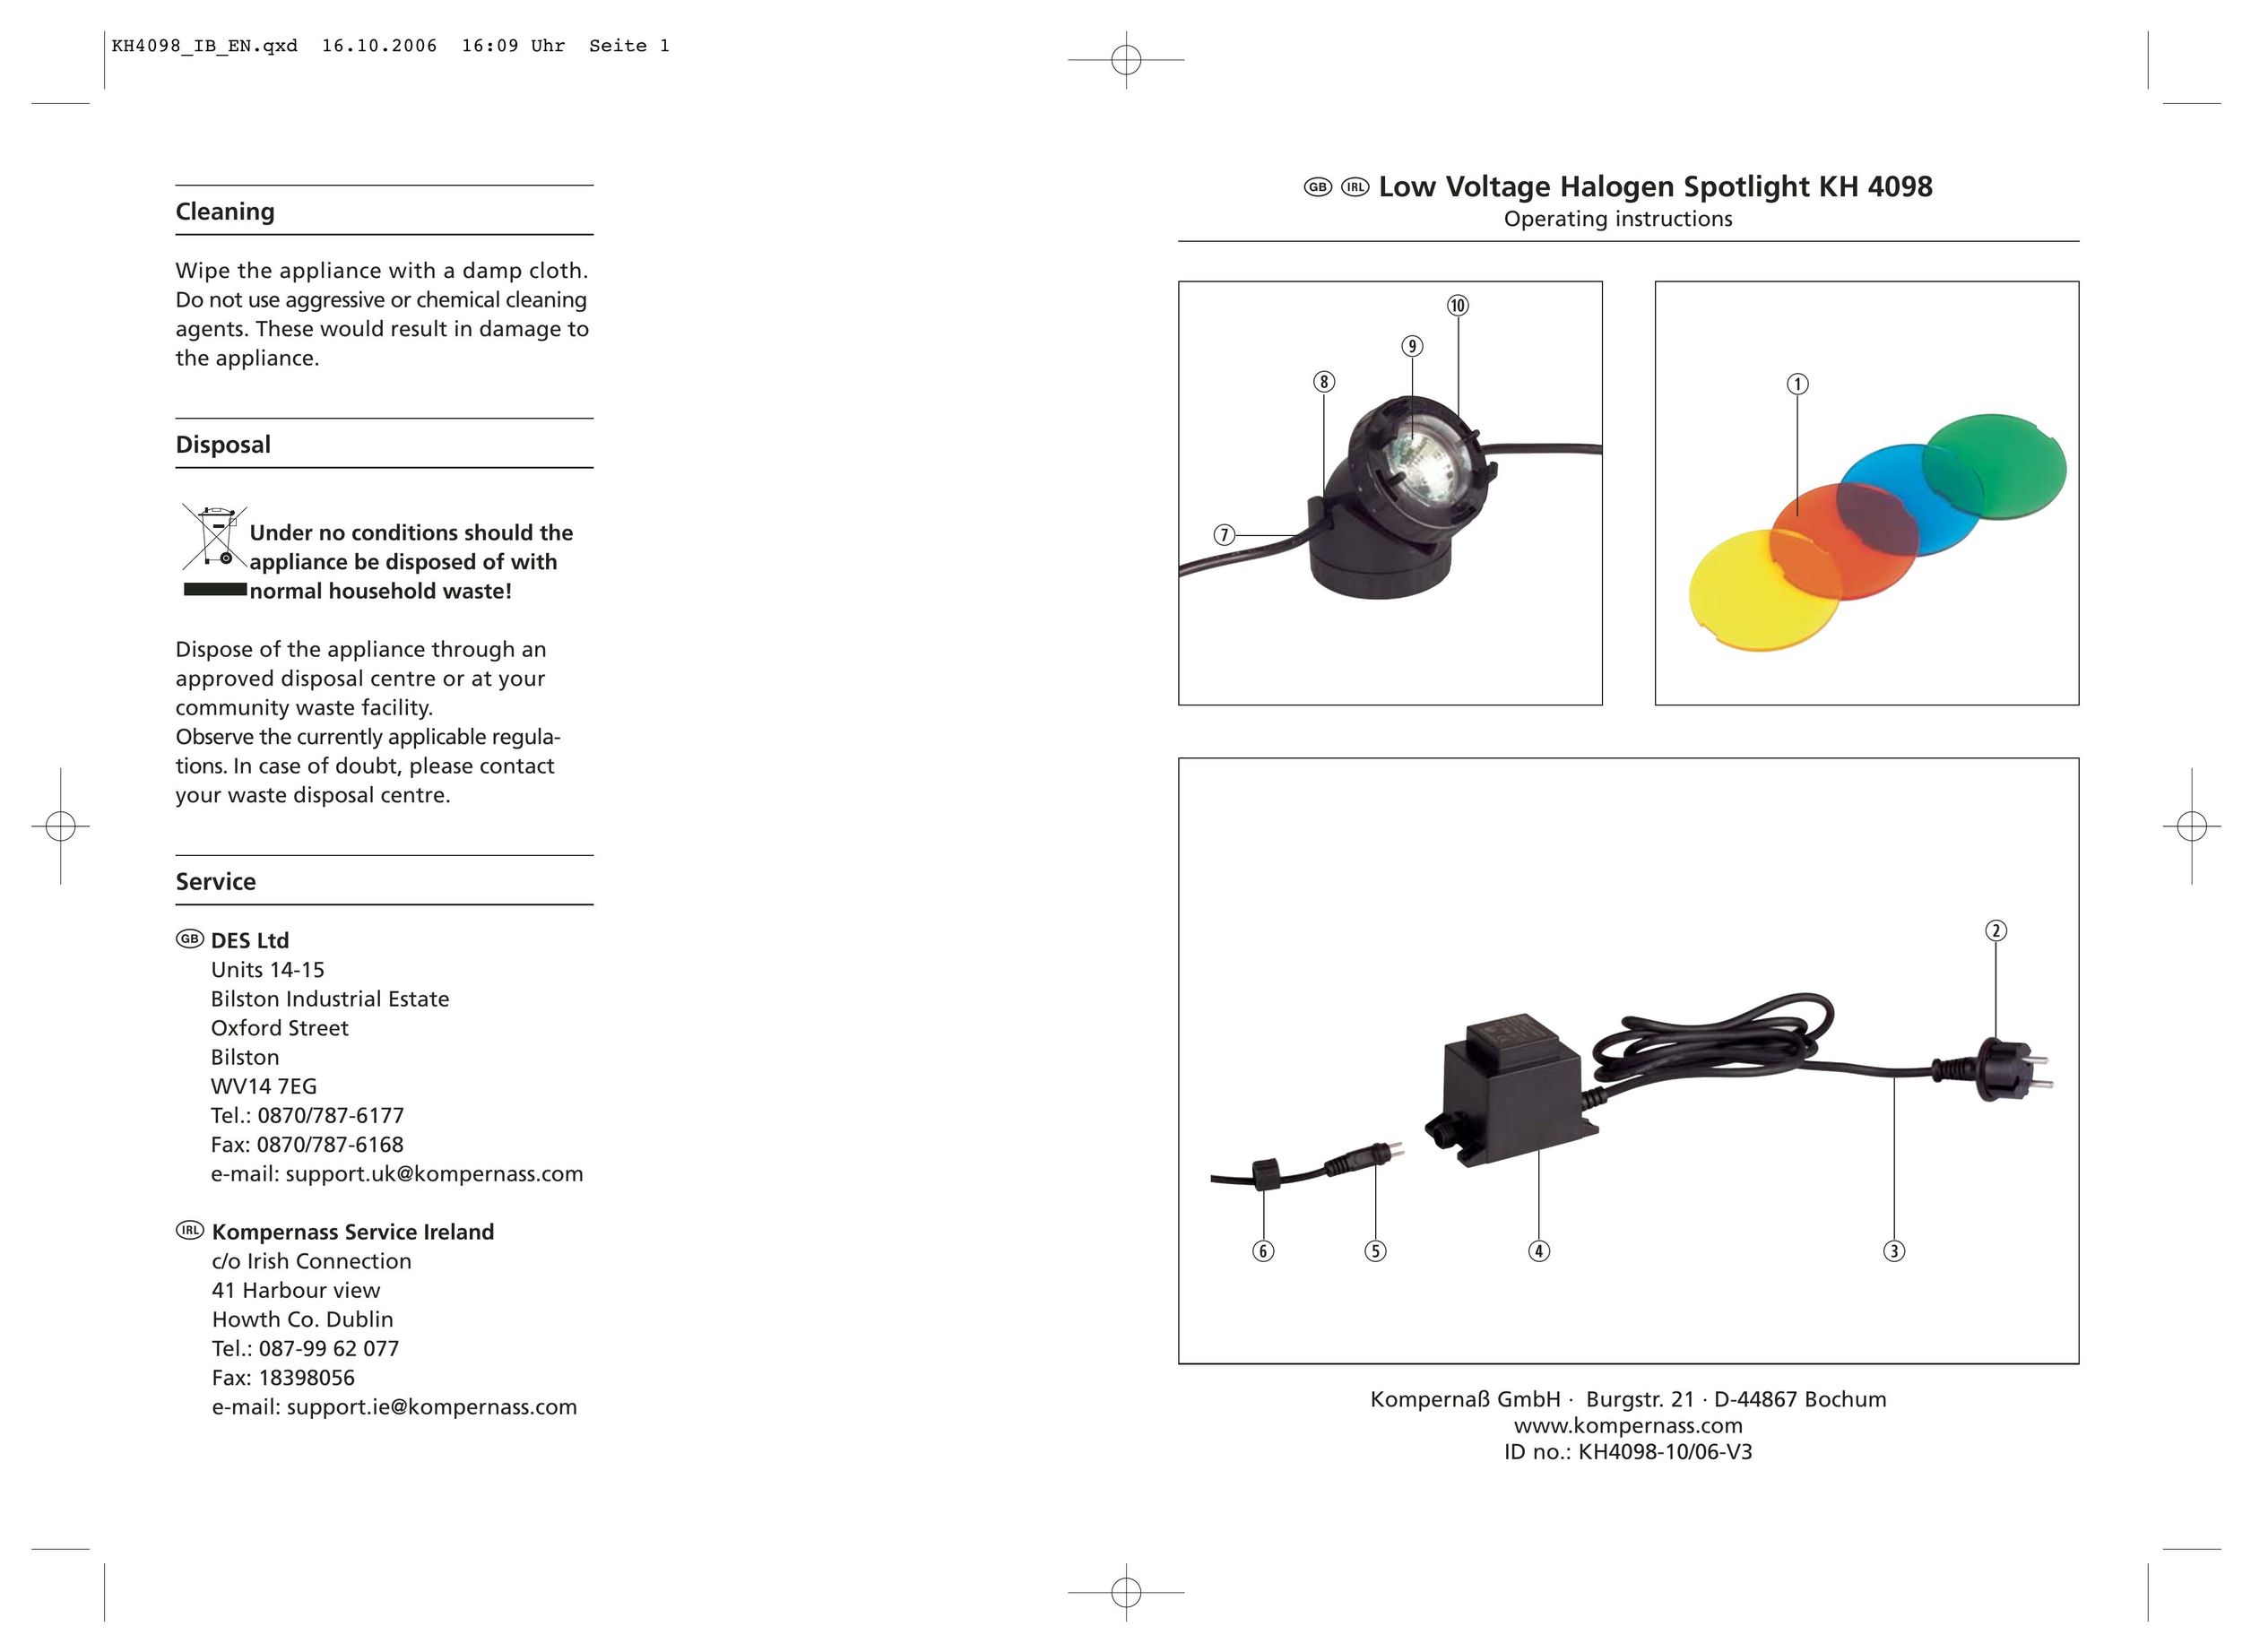 Kompernass KH 4098 Work Light User Manual